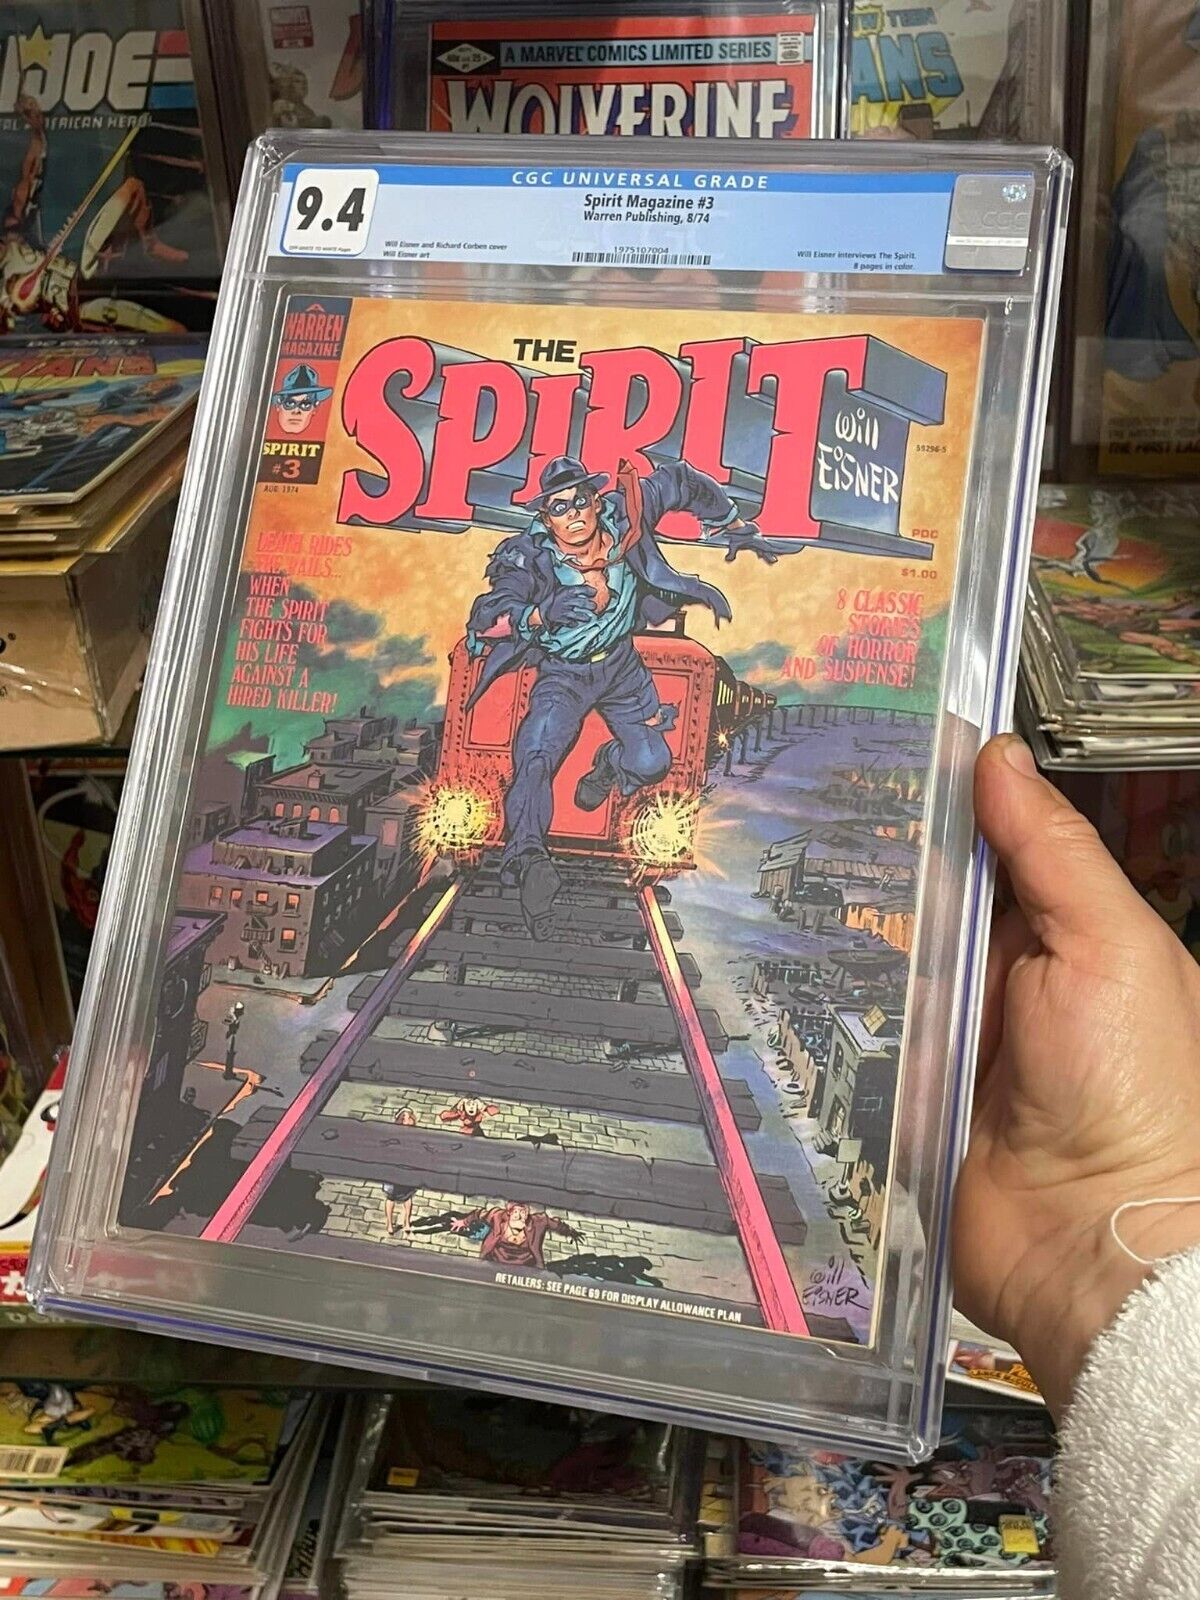 The Spirit Magazine #3 (CGC 9.4 - WARREN 1974) Will Eisner